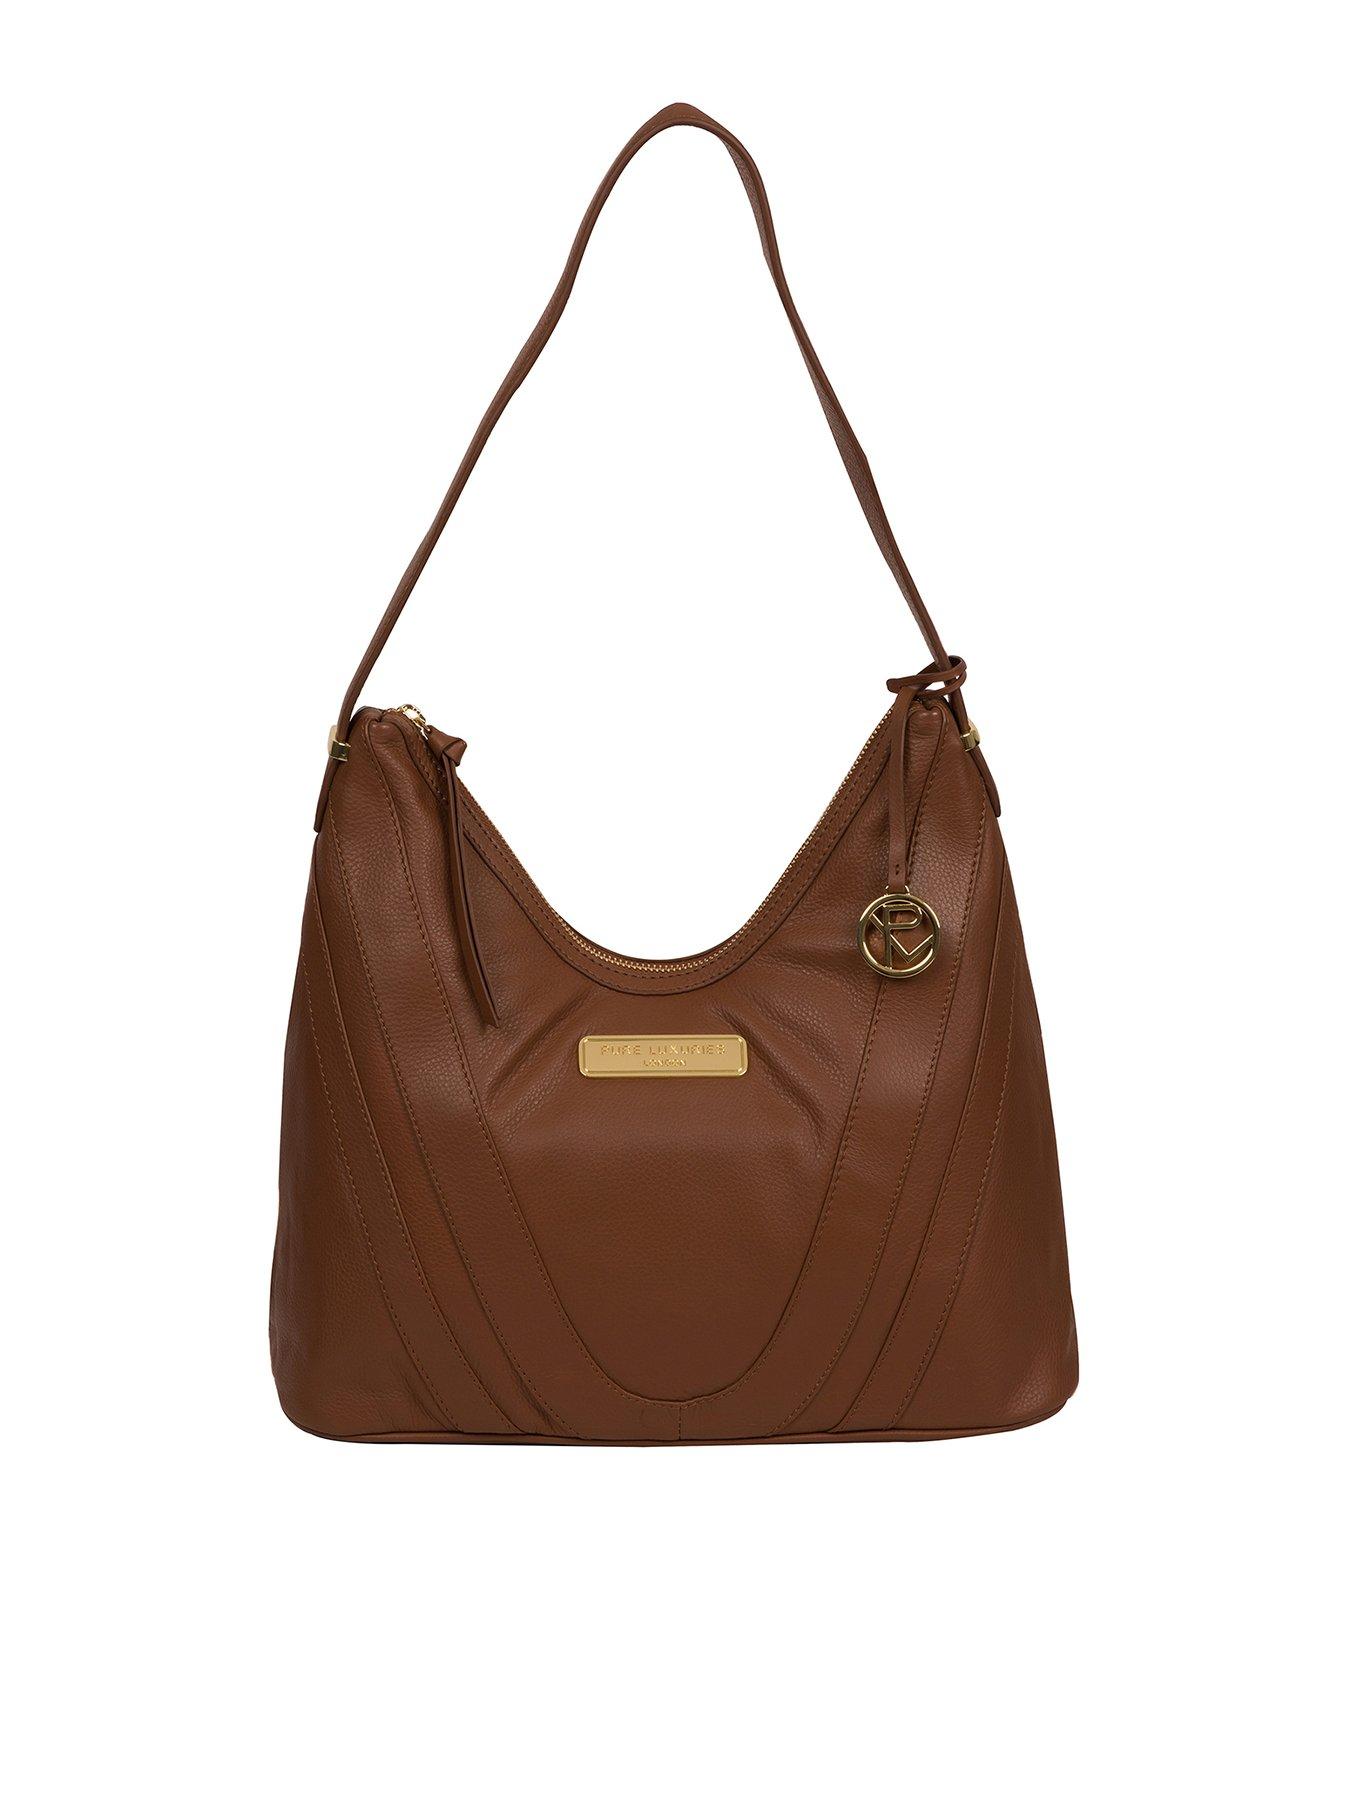 ASHWOOD Lovely Woman's Shoulder Bag Genuine Leather Chestnut Brown  Color Sz Med